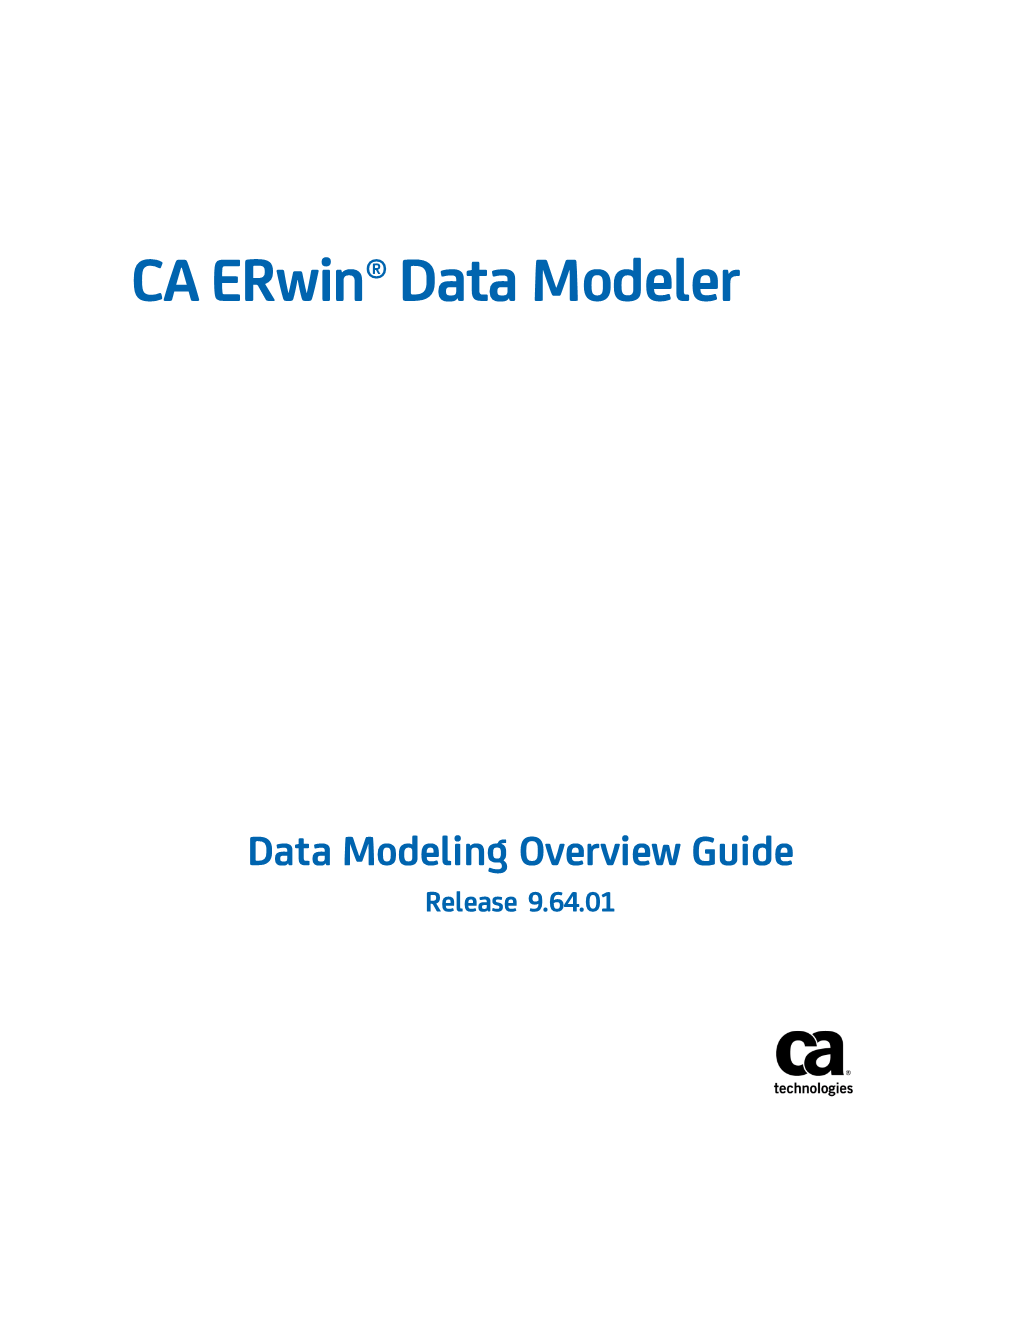 CA Erwin Data Modeler Data Modeling Overview Guide